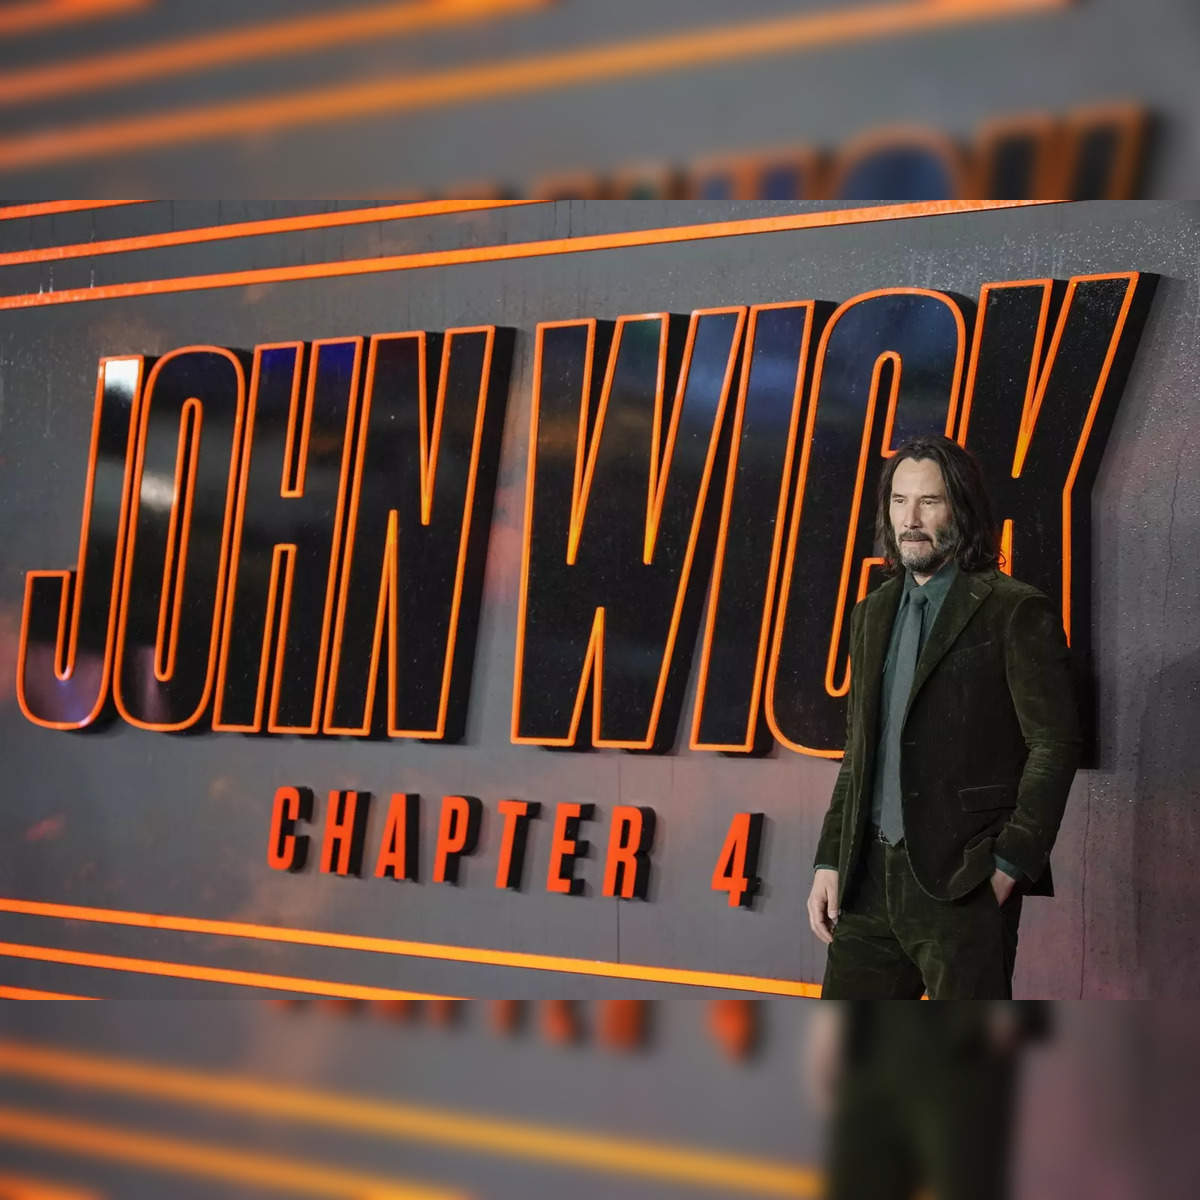 Keanu Reeves' John Wick 4 earnings per word revealed